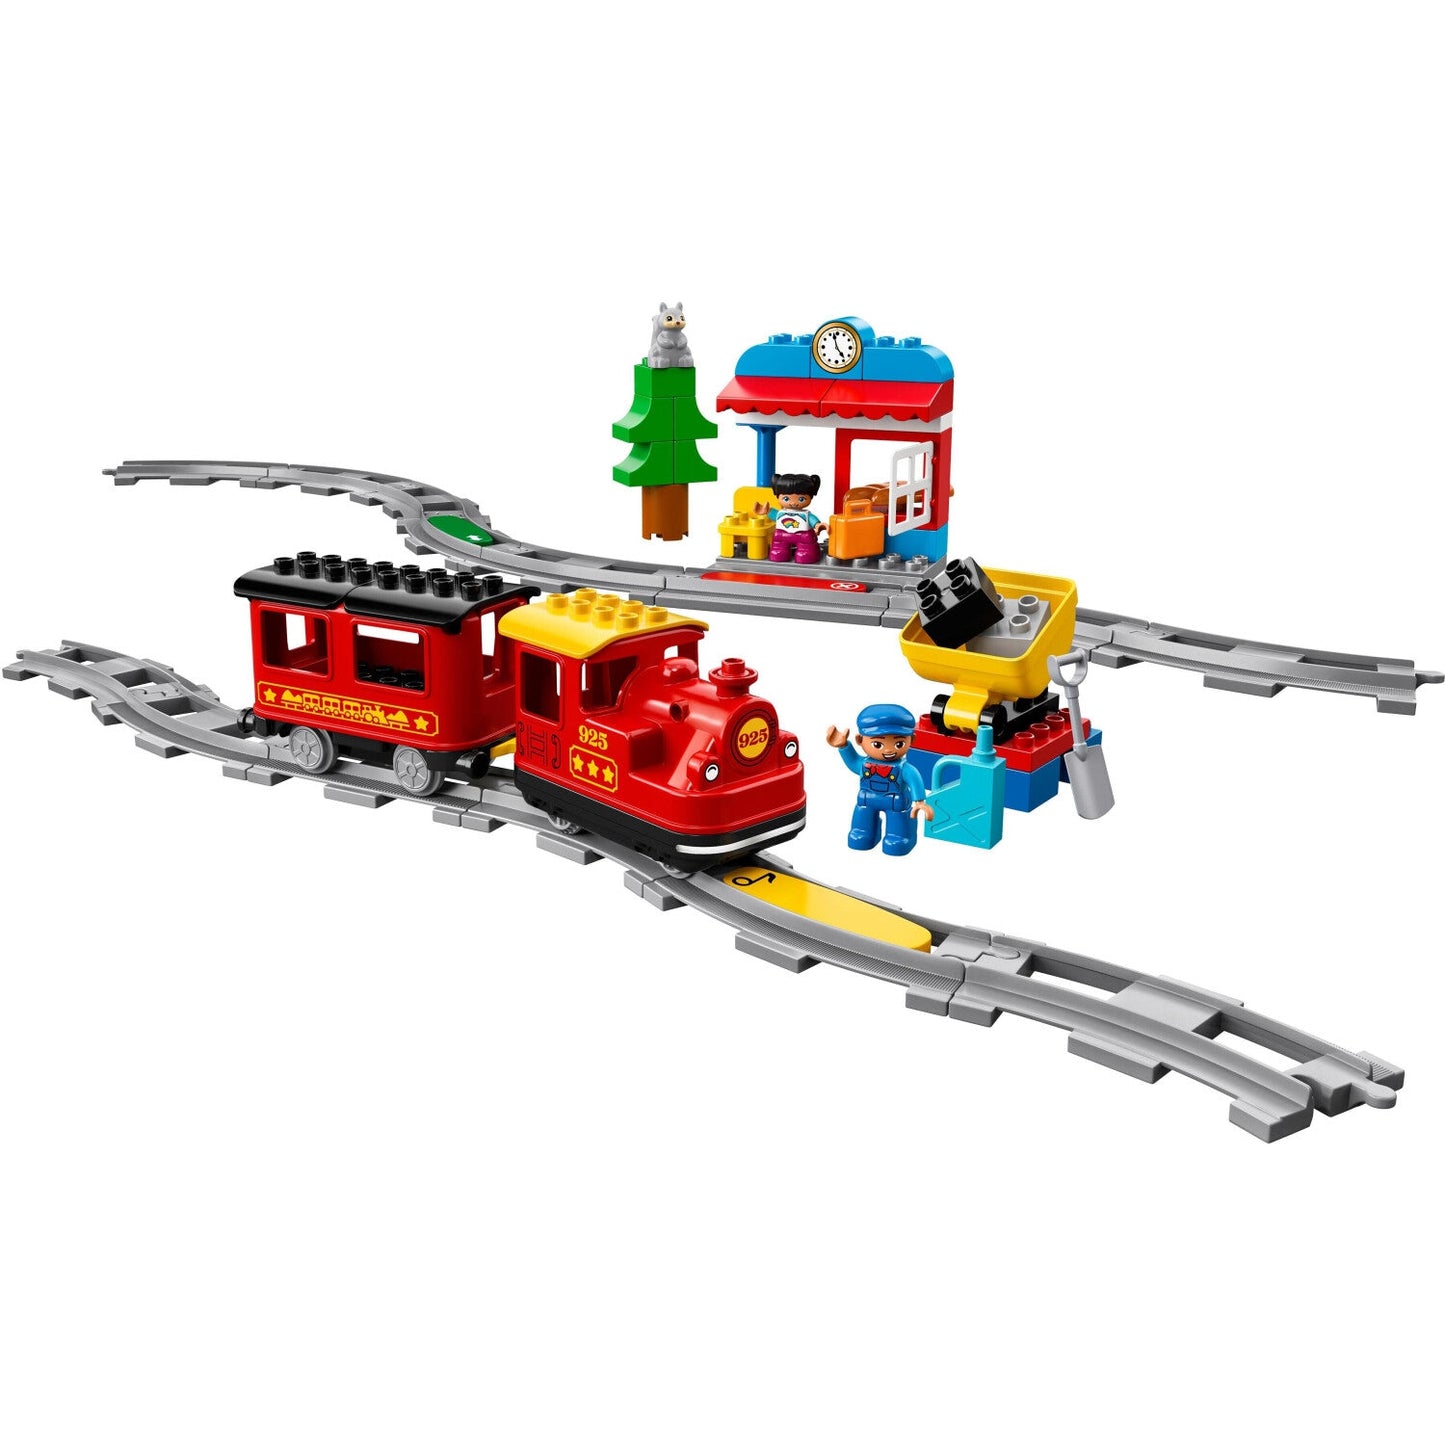 LEGO 10874 Duplo Dampfeisenbahn